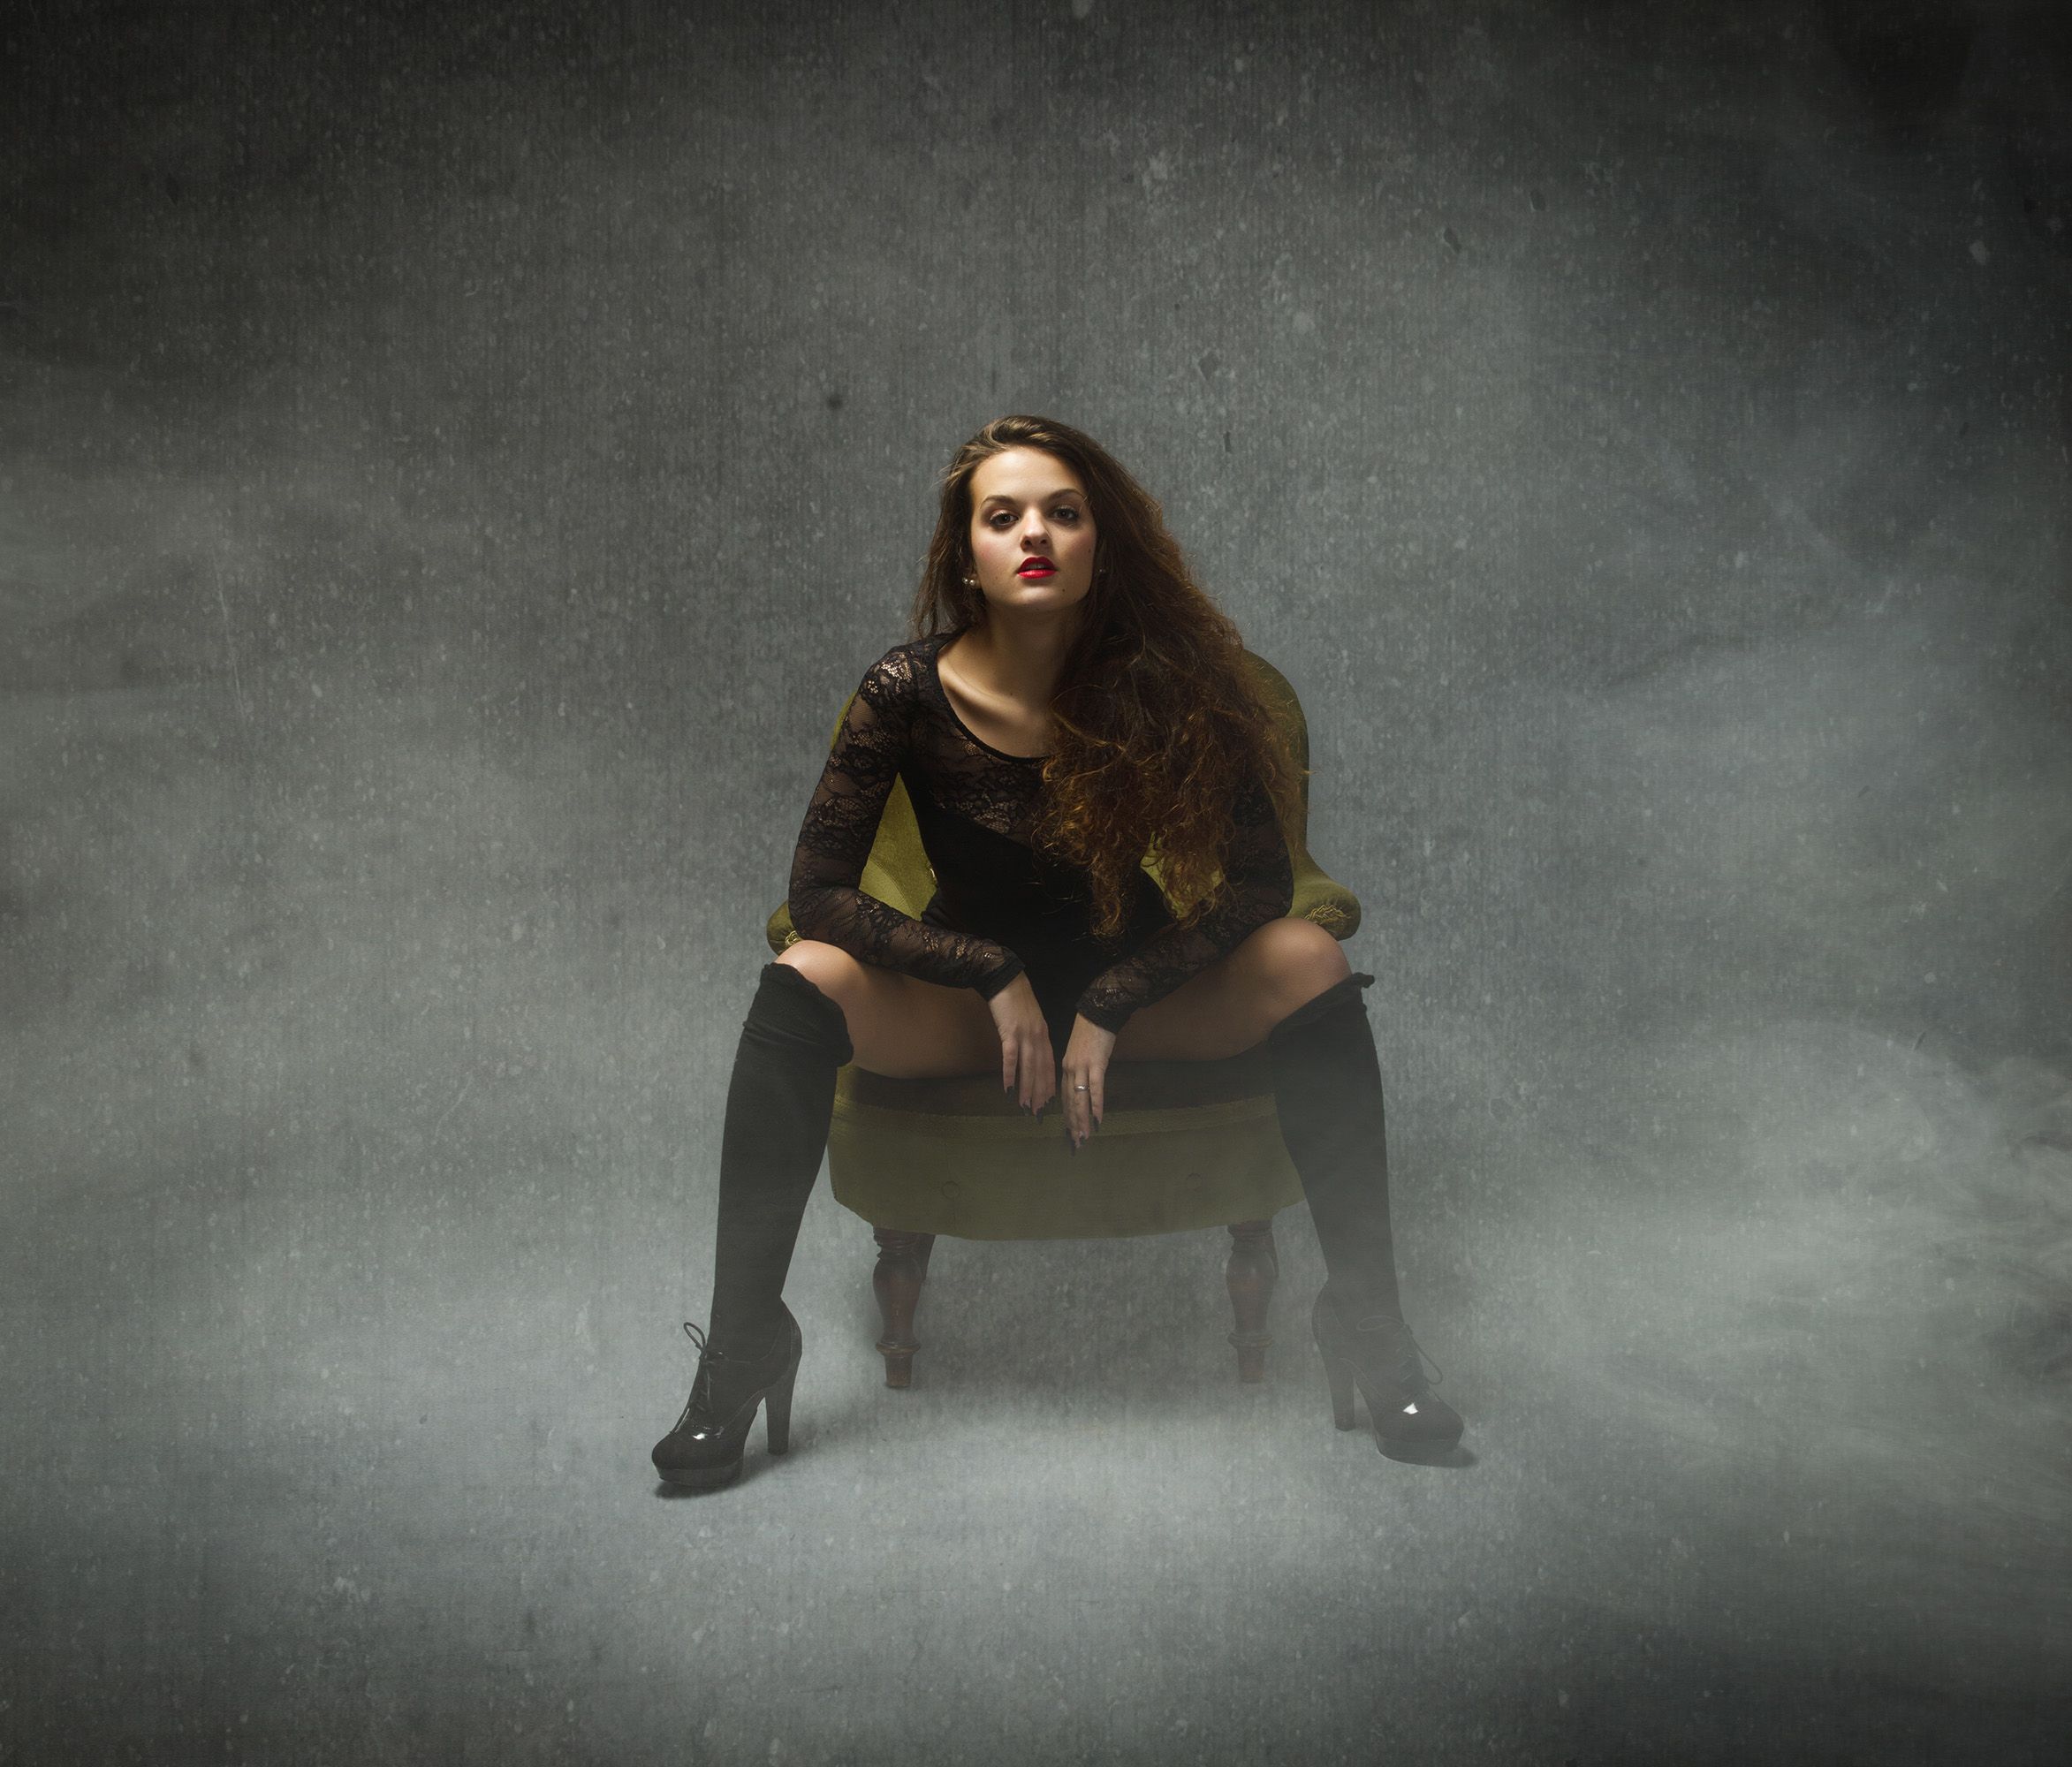 Frau in BDSM-Outfit sitzt mit gespreizten Beinen auf einem Sessel